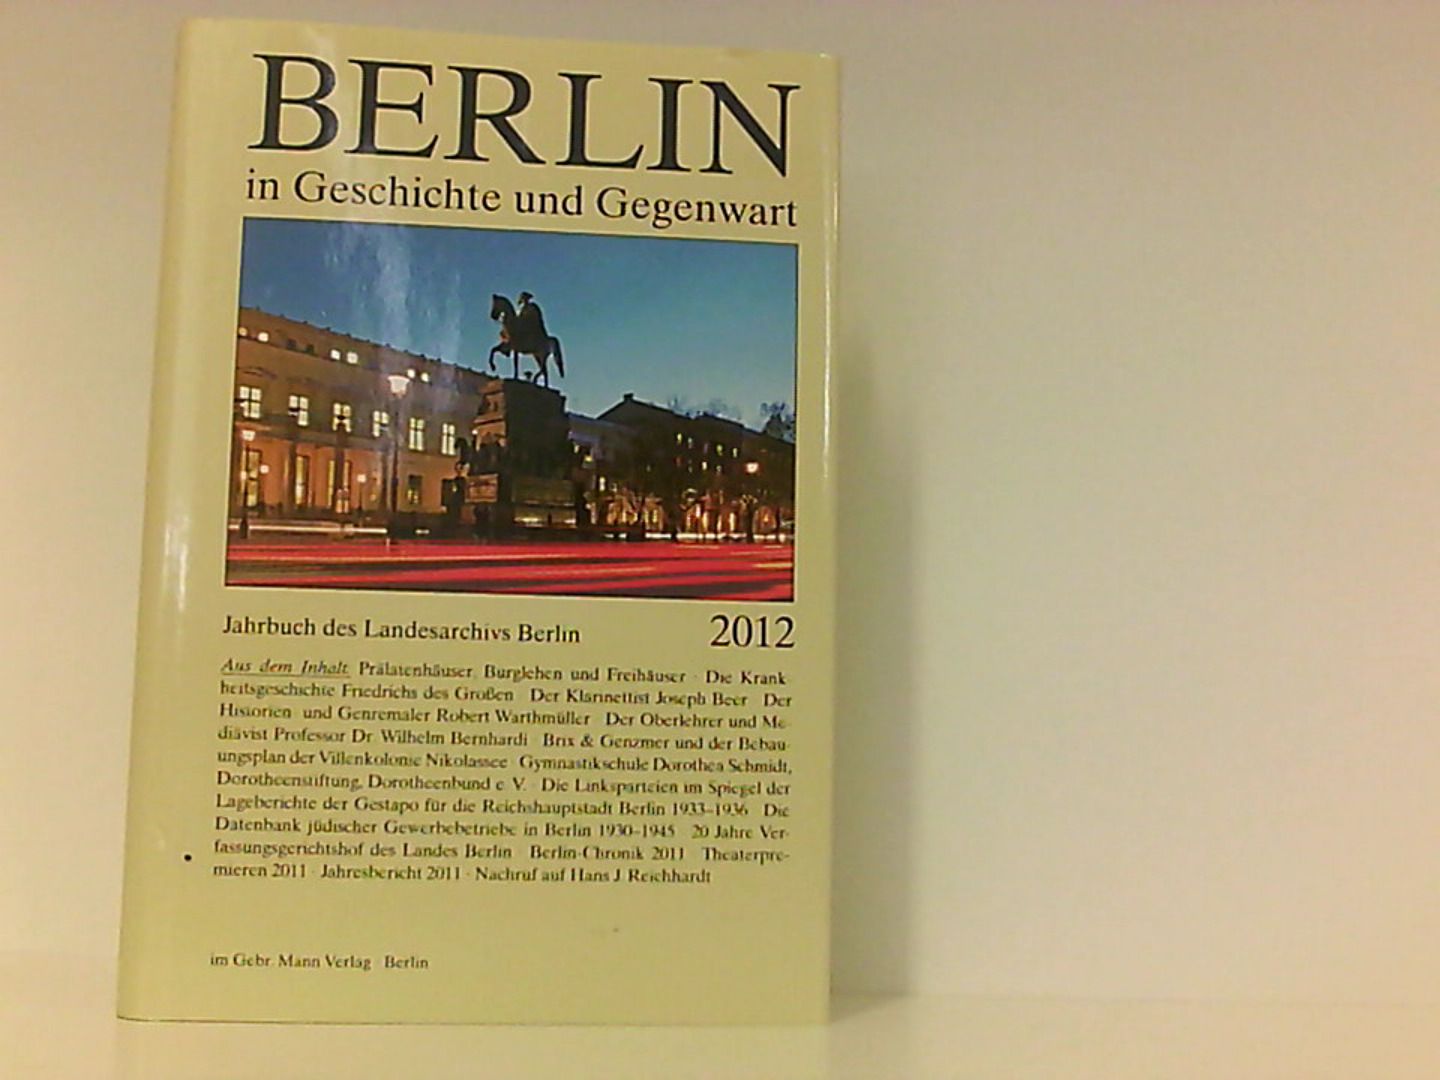 Berlin in Geschichte und Gegenwart: Jahrbuch des Landesarchivs Berlin 2012 - Breunig, Werner und Uwe Schaper